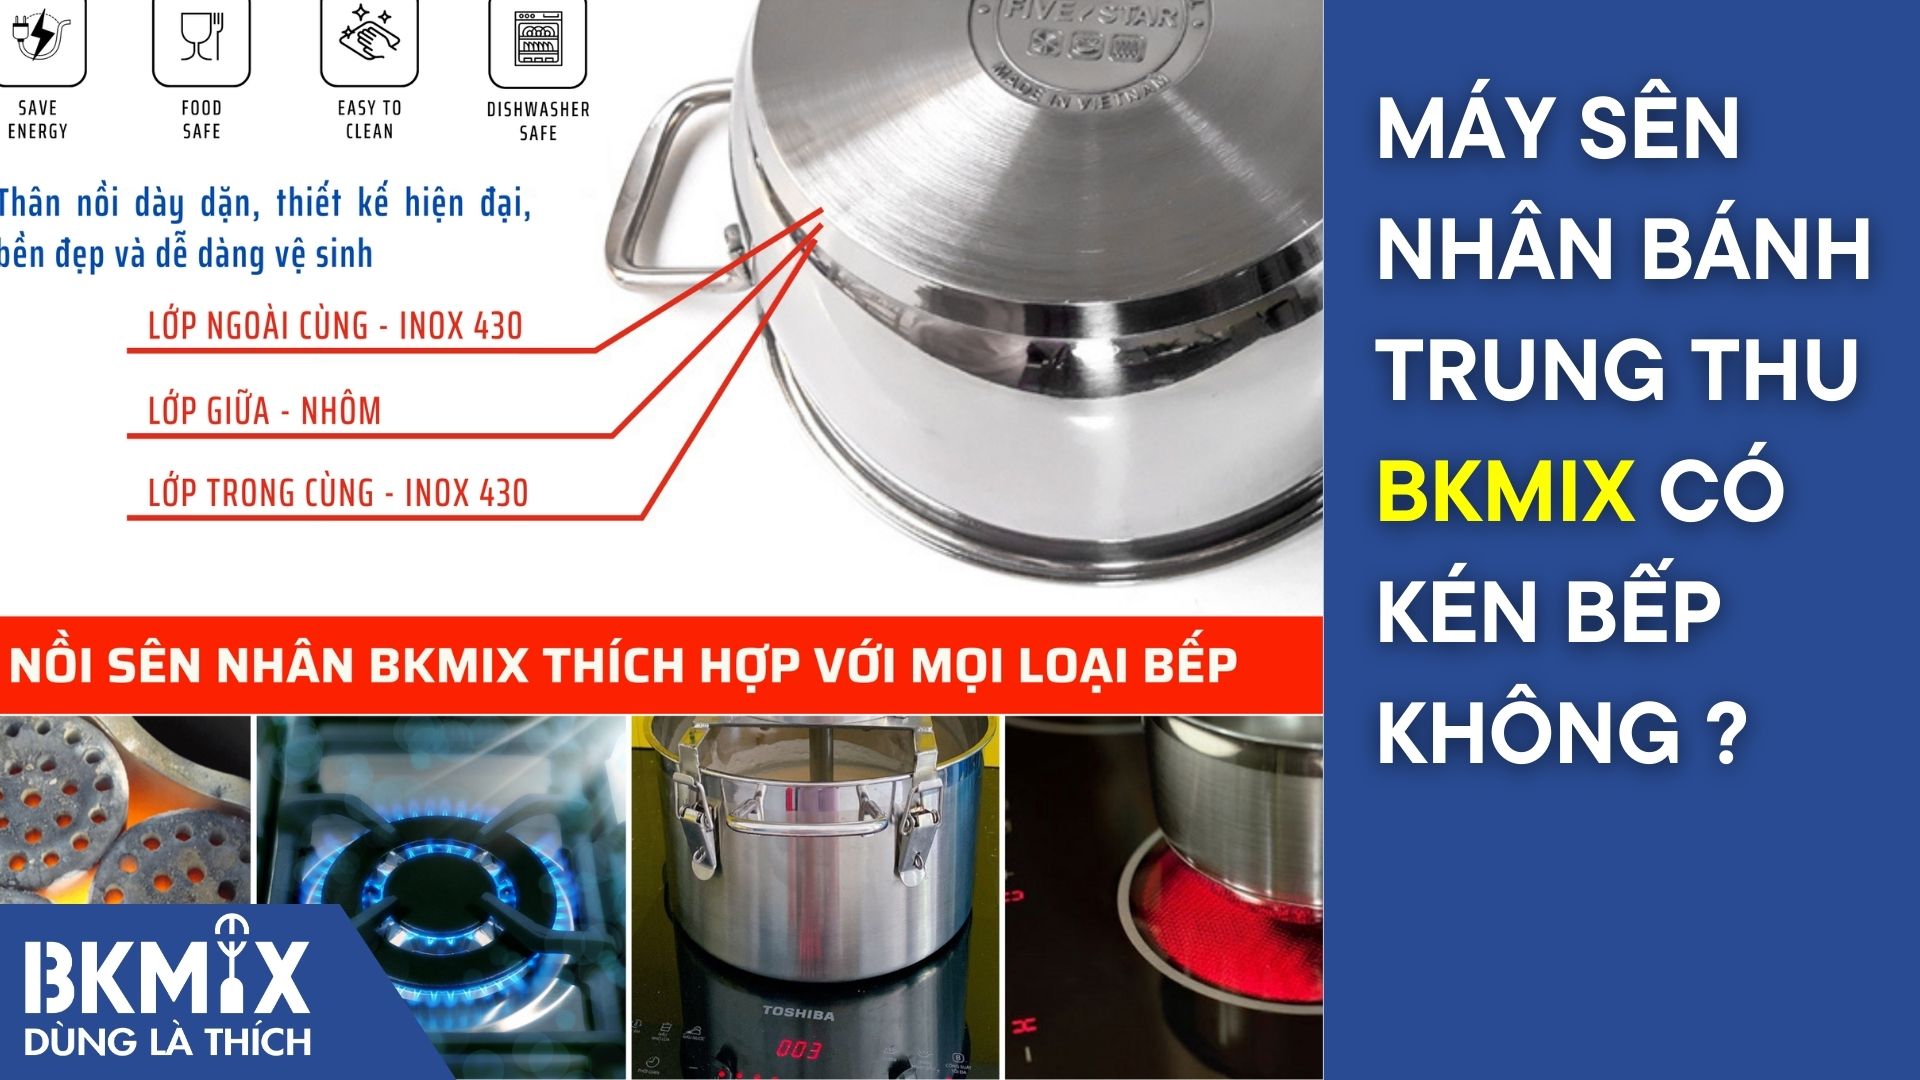 Máy sên nhân bánh trung thu BKMIX có kén bếp không?